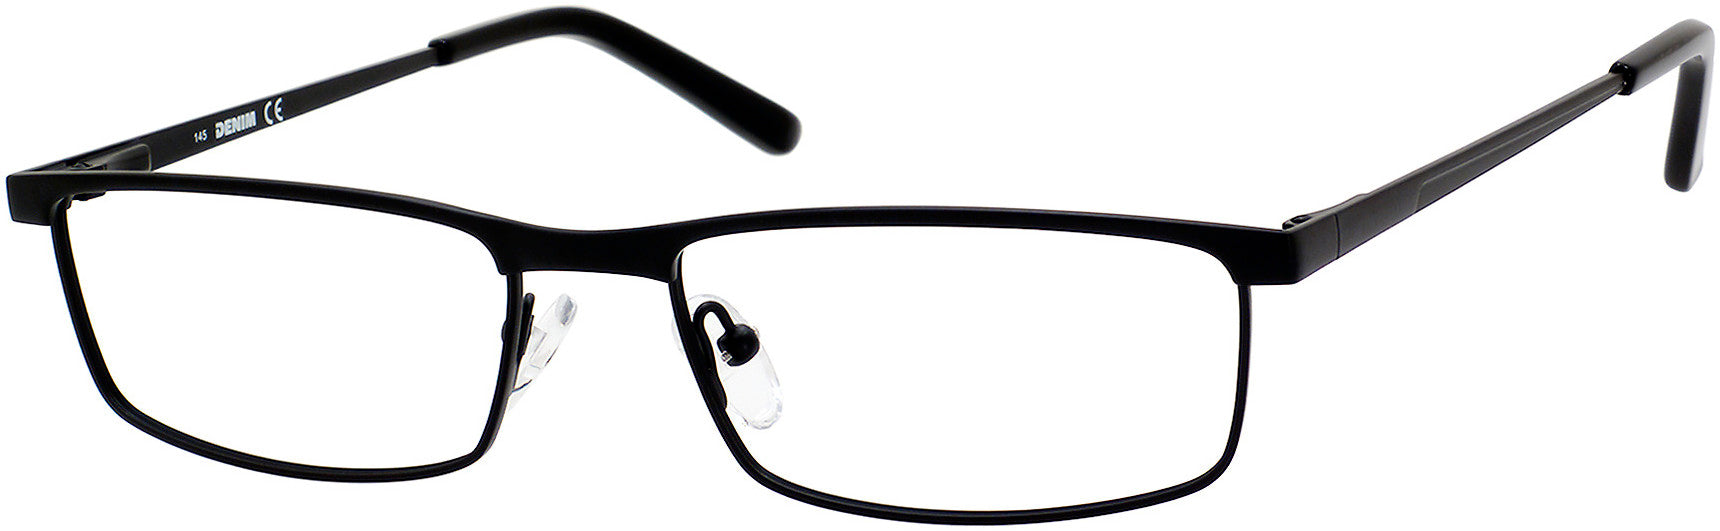  Denim 148 Rectangular Eyeglasses 0003-0003  Matte Black (00 Demo Lens)